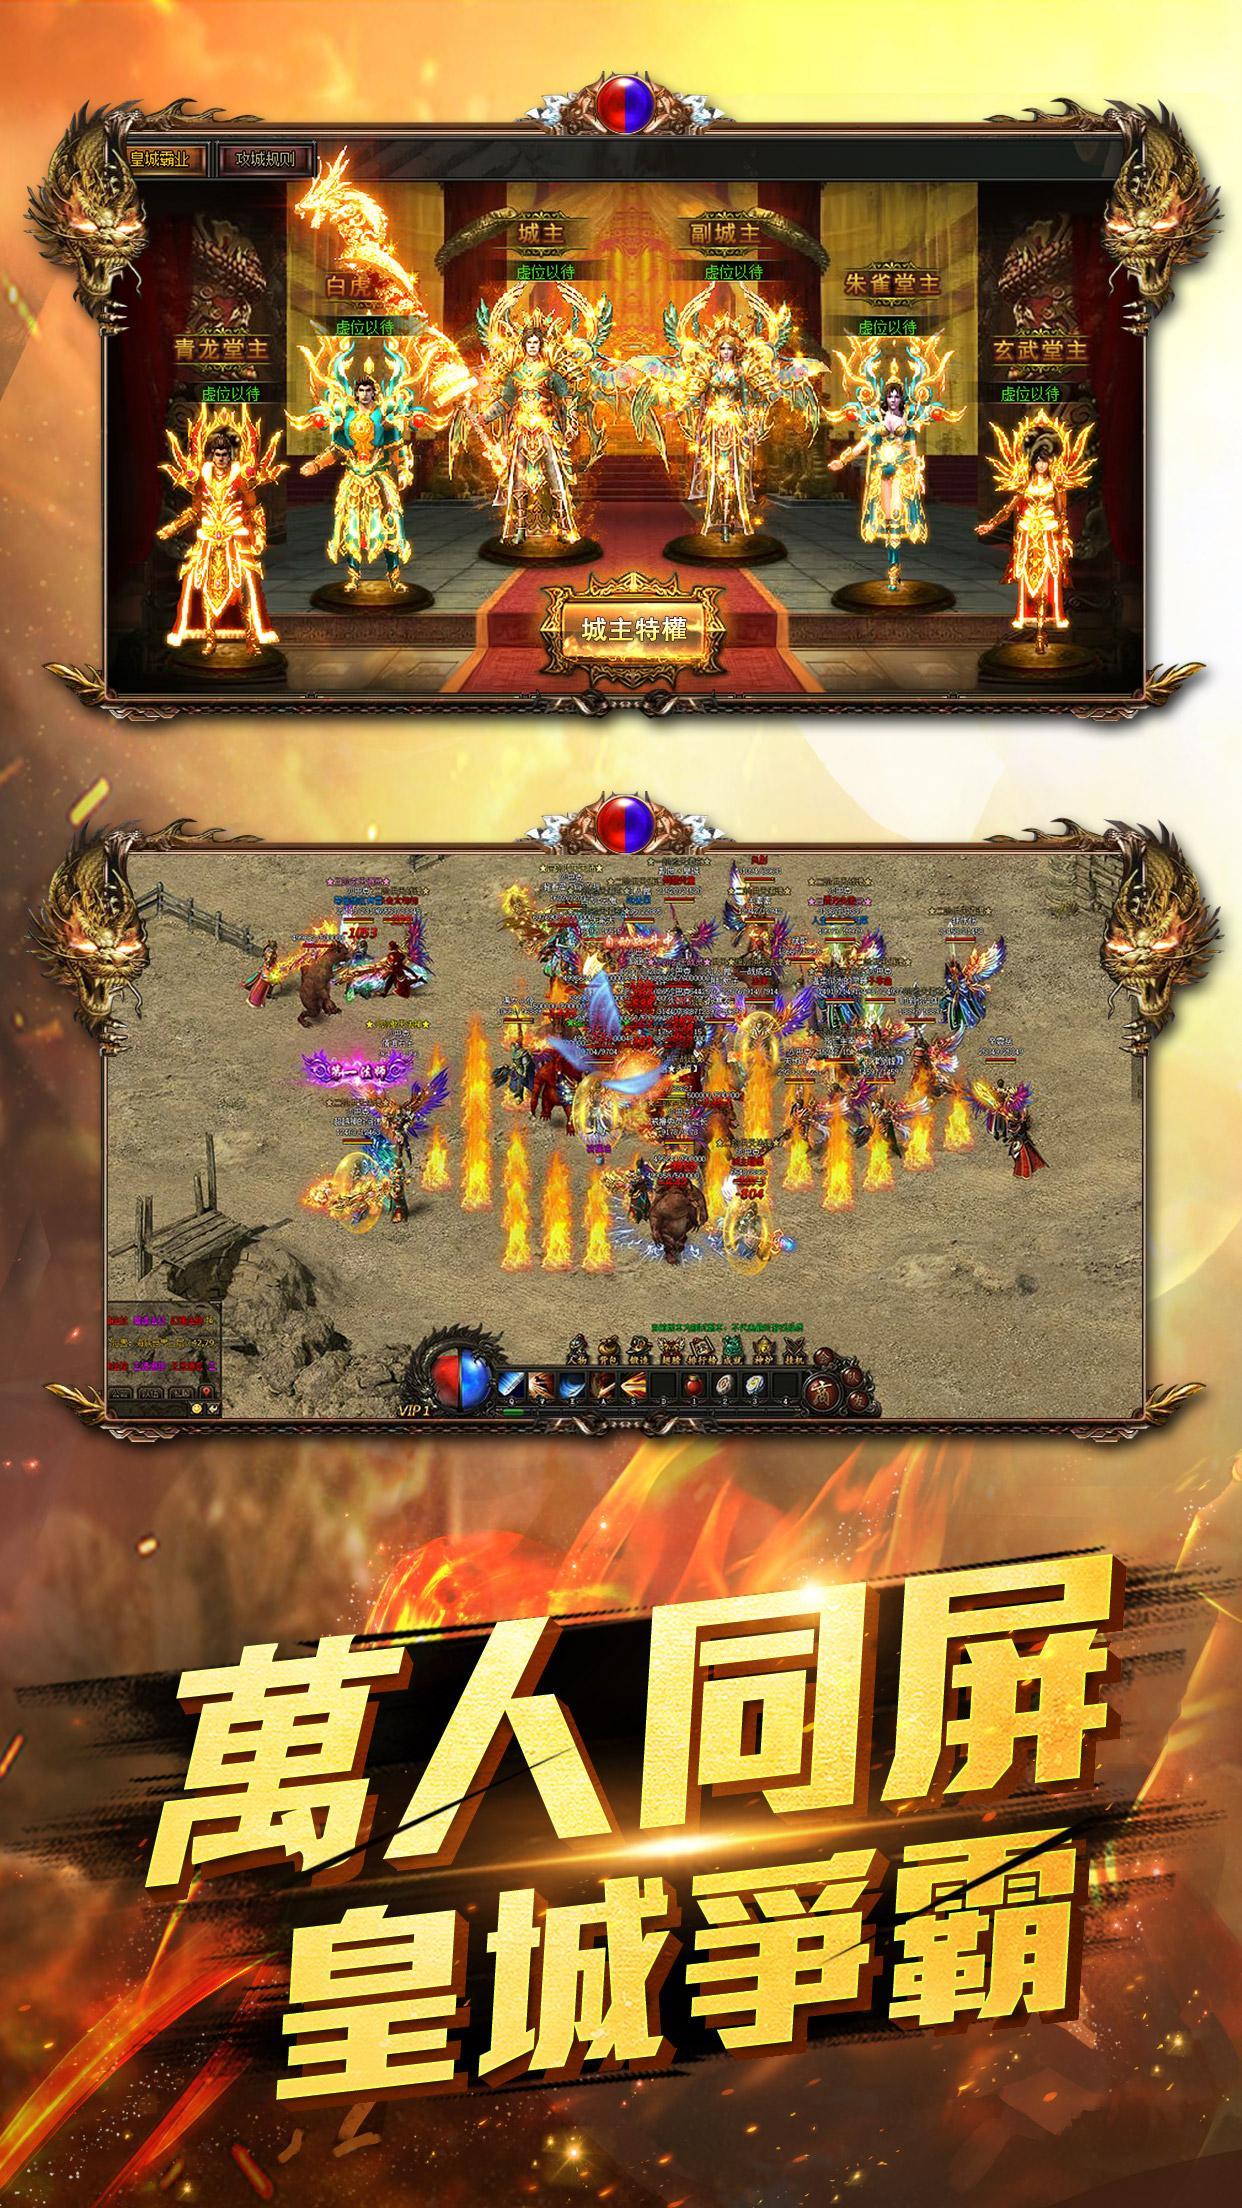 Screenshot 1 of Black Dark Dragon Slaying - Milhares de pessoas na mesma tela sangue quente PK jogo para celular lenda budista colocado no gancho 201905231730-apk